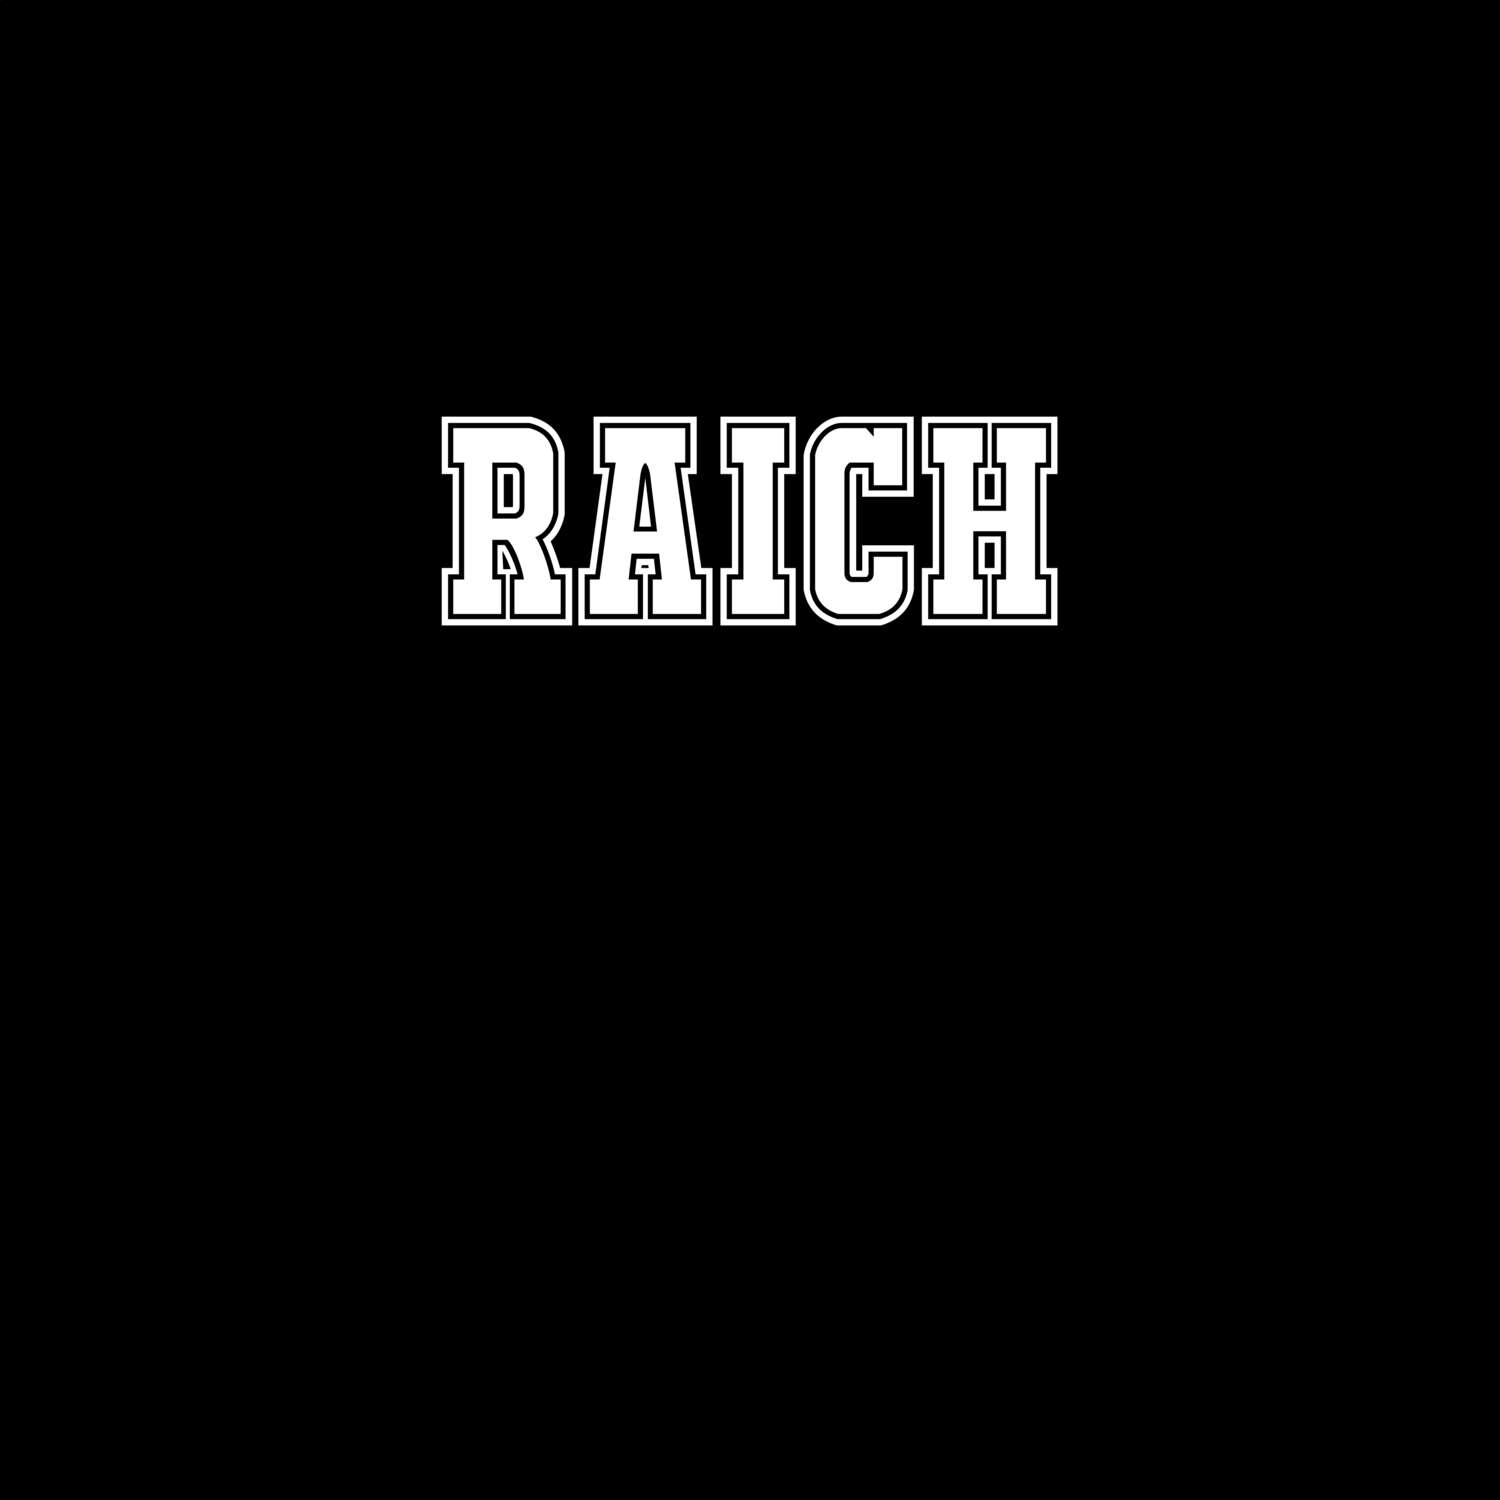 Raich T-Shirt »Classic«